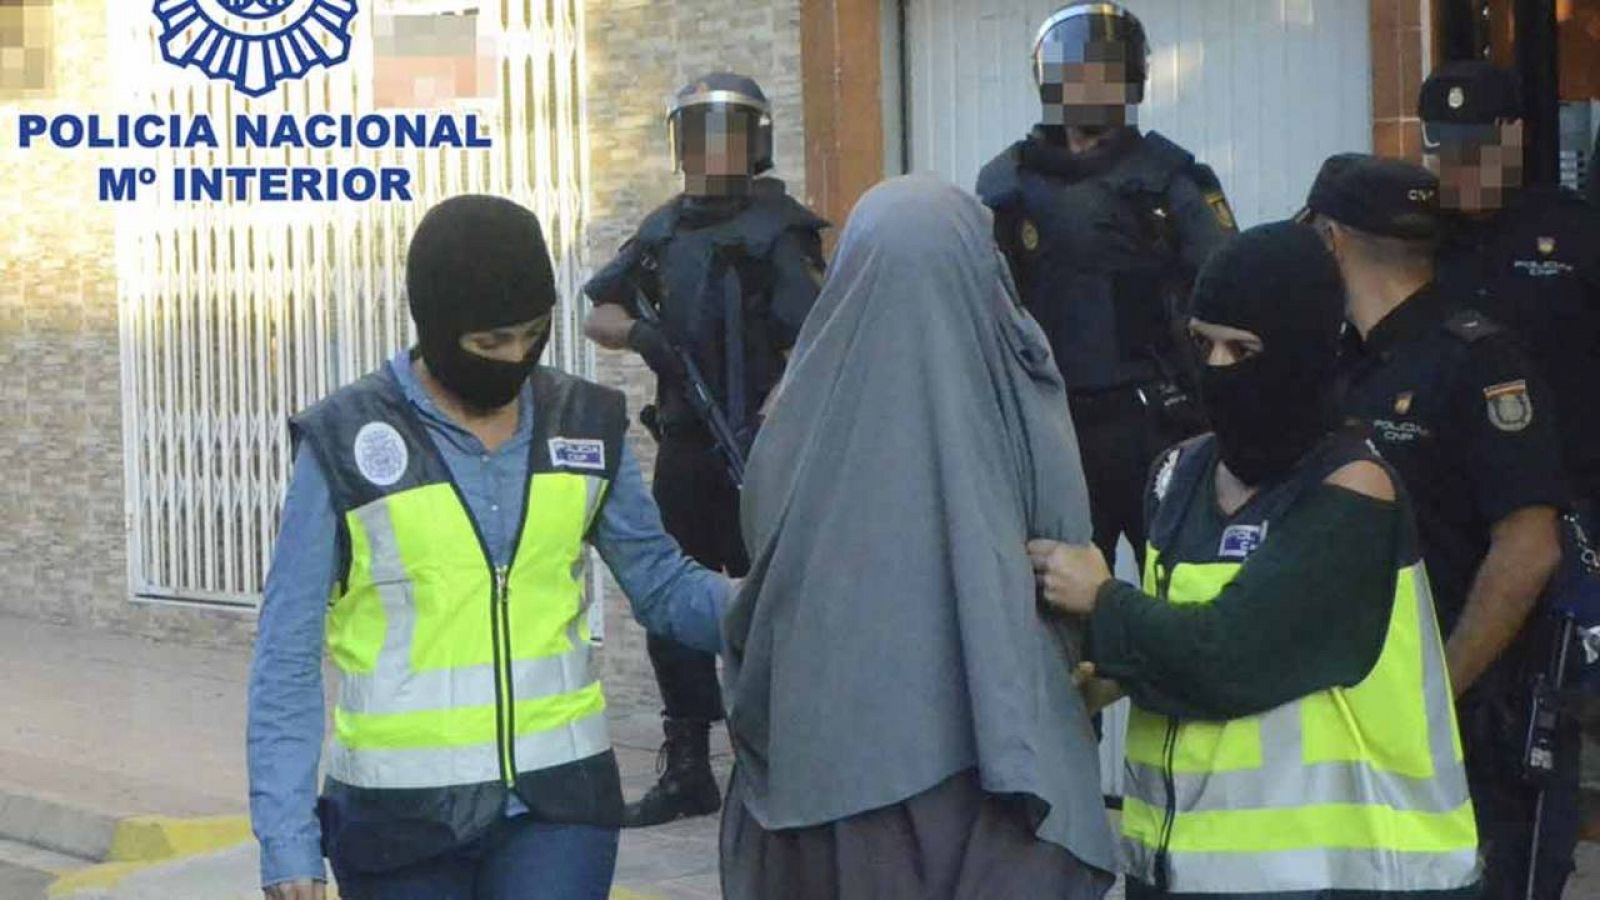 Agentes de la Policía Nacional durante la detención en Xeraco (Valencia) de una joven, de unos 20 años, por su presunta vinculación al Estado Islámico.